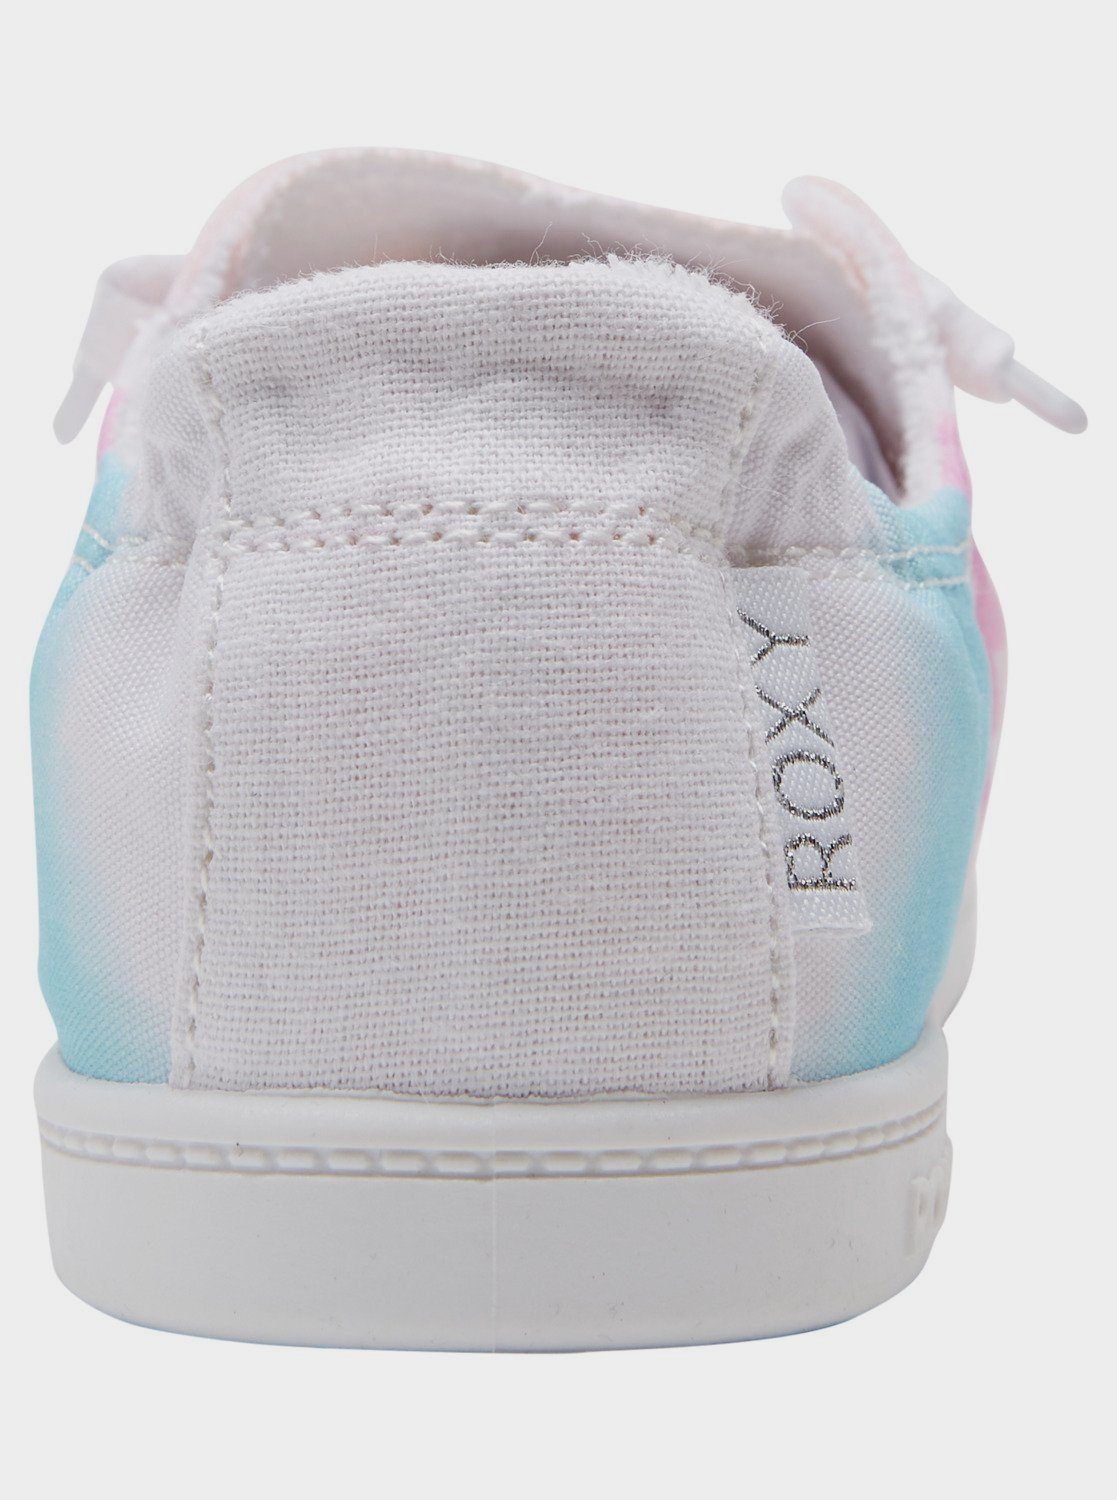 Roxy Bayshore Sneaker Gradient Vivid